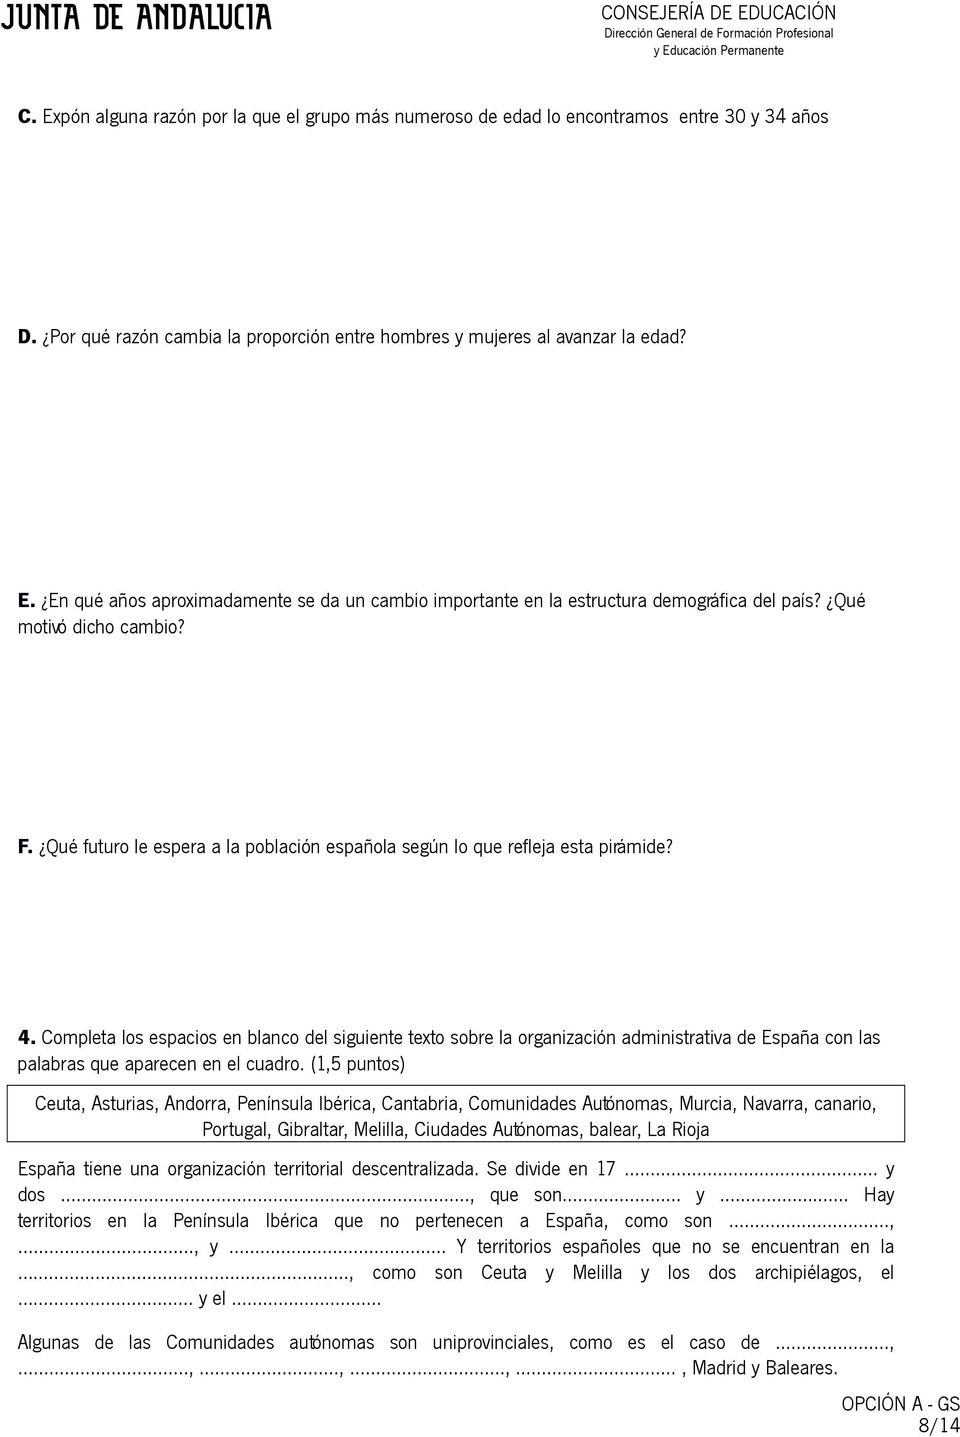 Completa los espacios en blanco del siguiente texto sobre la organización administrativa de España con las palabras que aparecen en el cuadro.